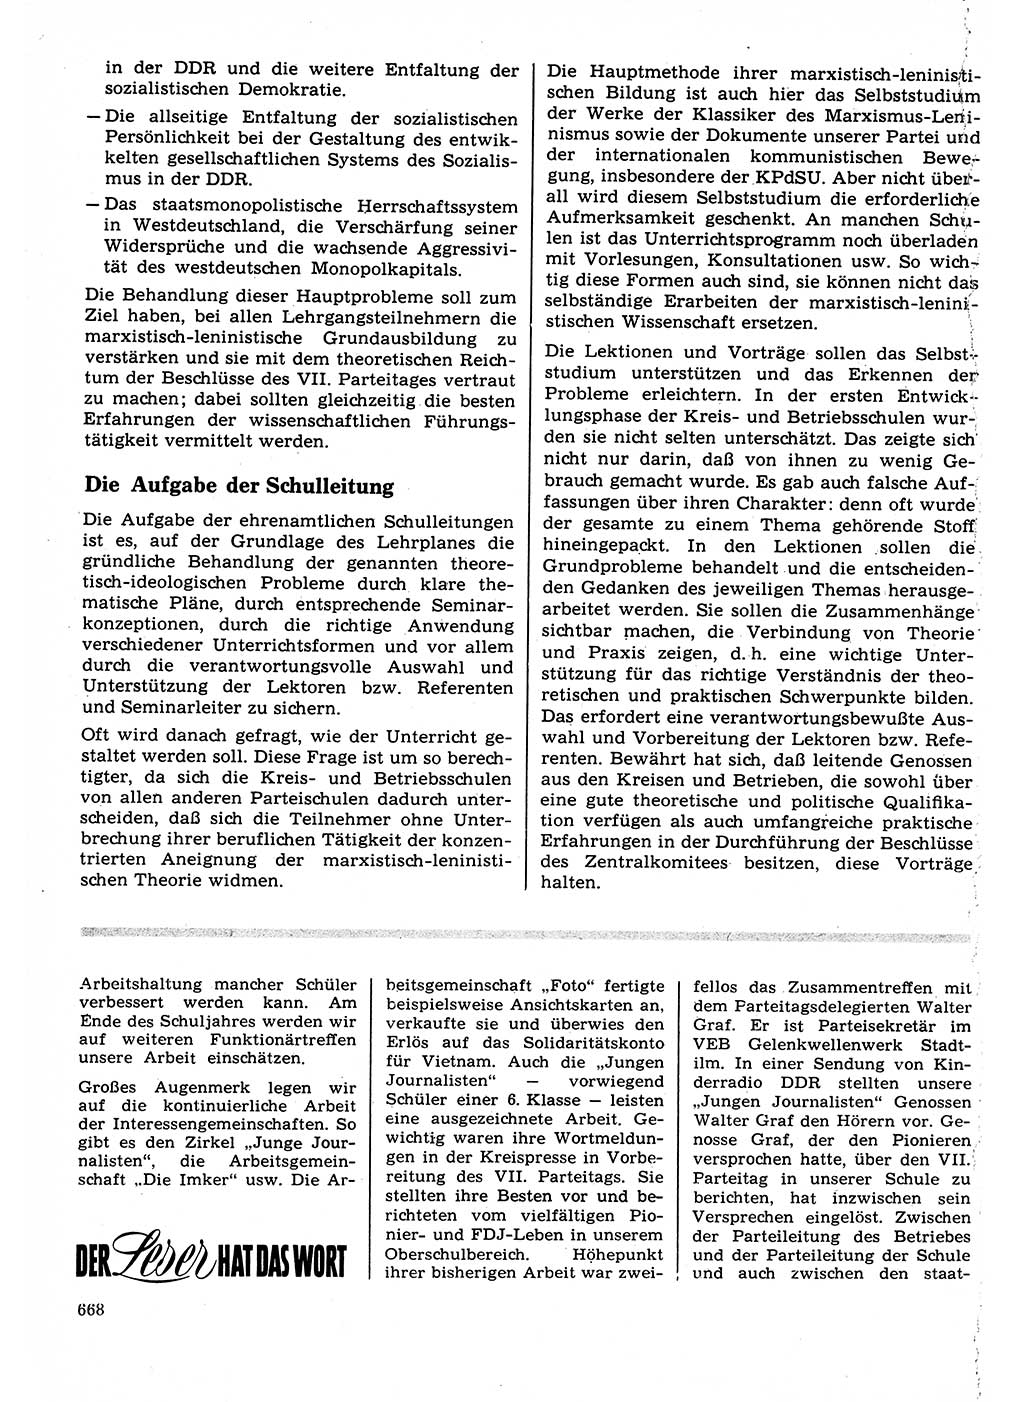 Neuer Weg (NW), Organ des Zentralkomitees (ZK) der SED (Sozialistische Einheitspartei Deutschlands) für Fragen des Parteilebens, 22. Jahrgang [Deutsche Demokratische Republik (DDR)] 1967, Seite 668 (NW ZK SED DDR 1967, S. 668)